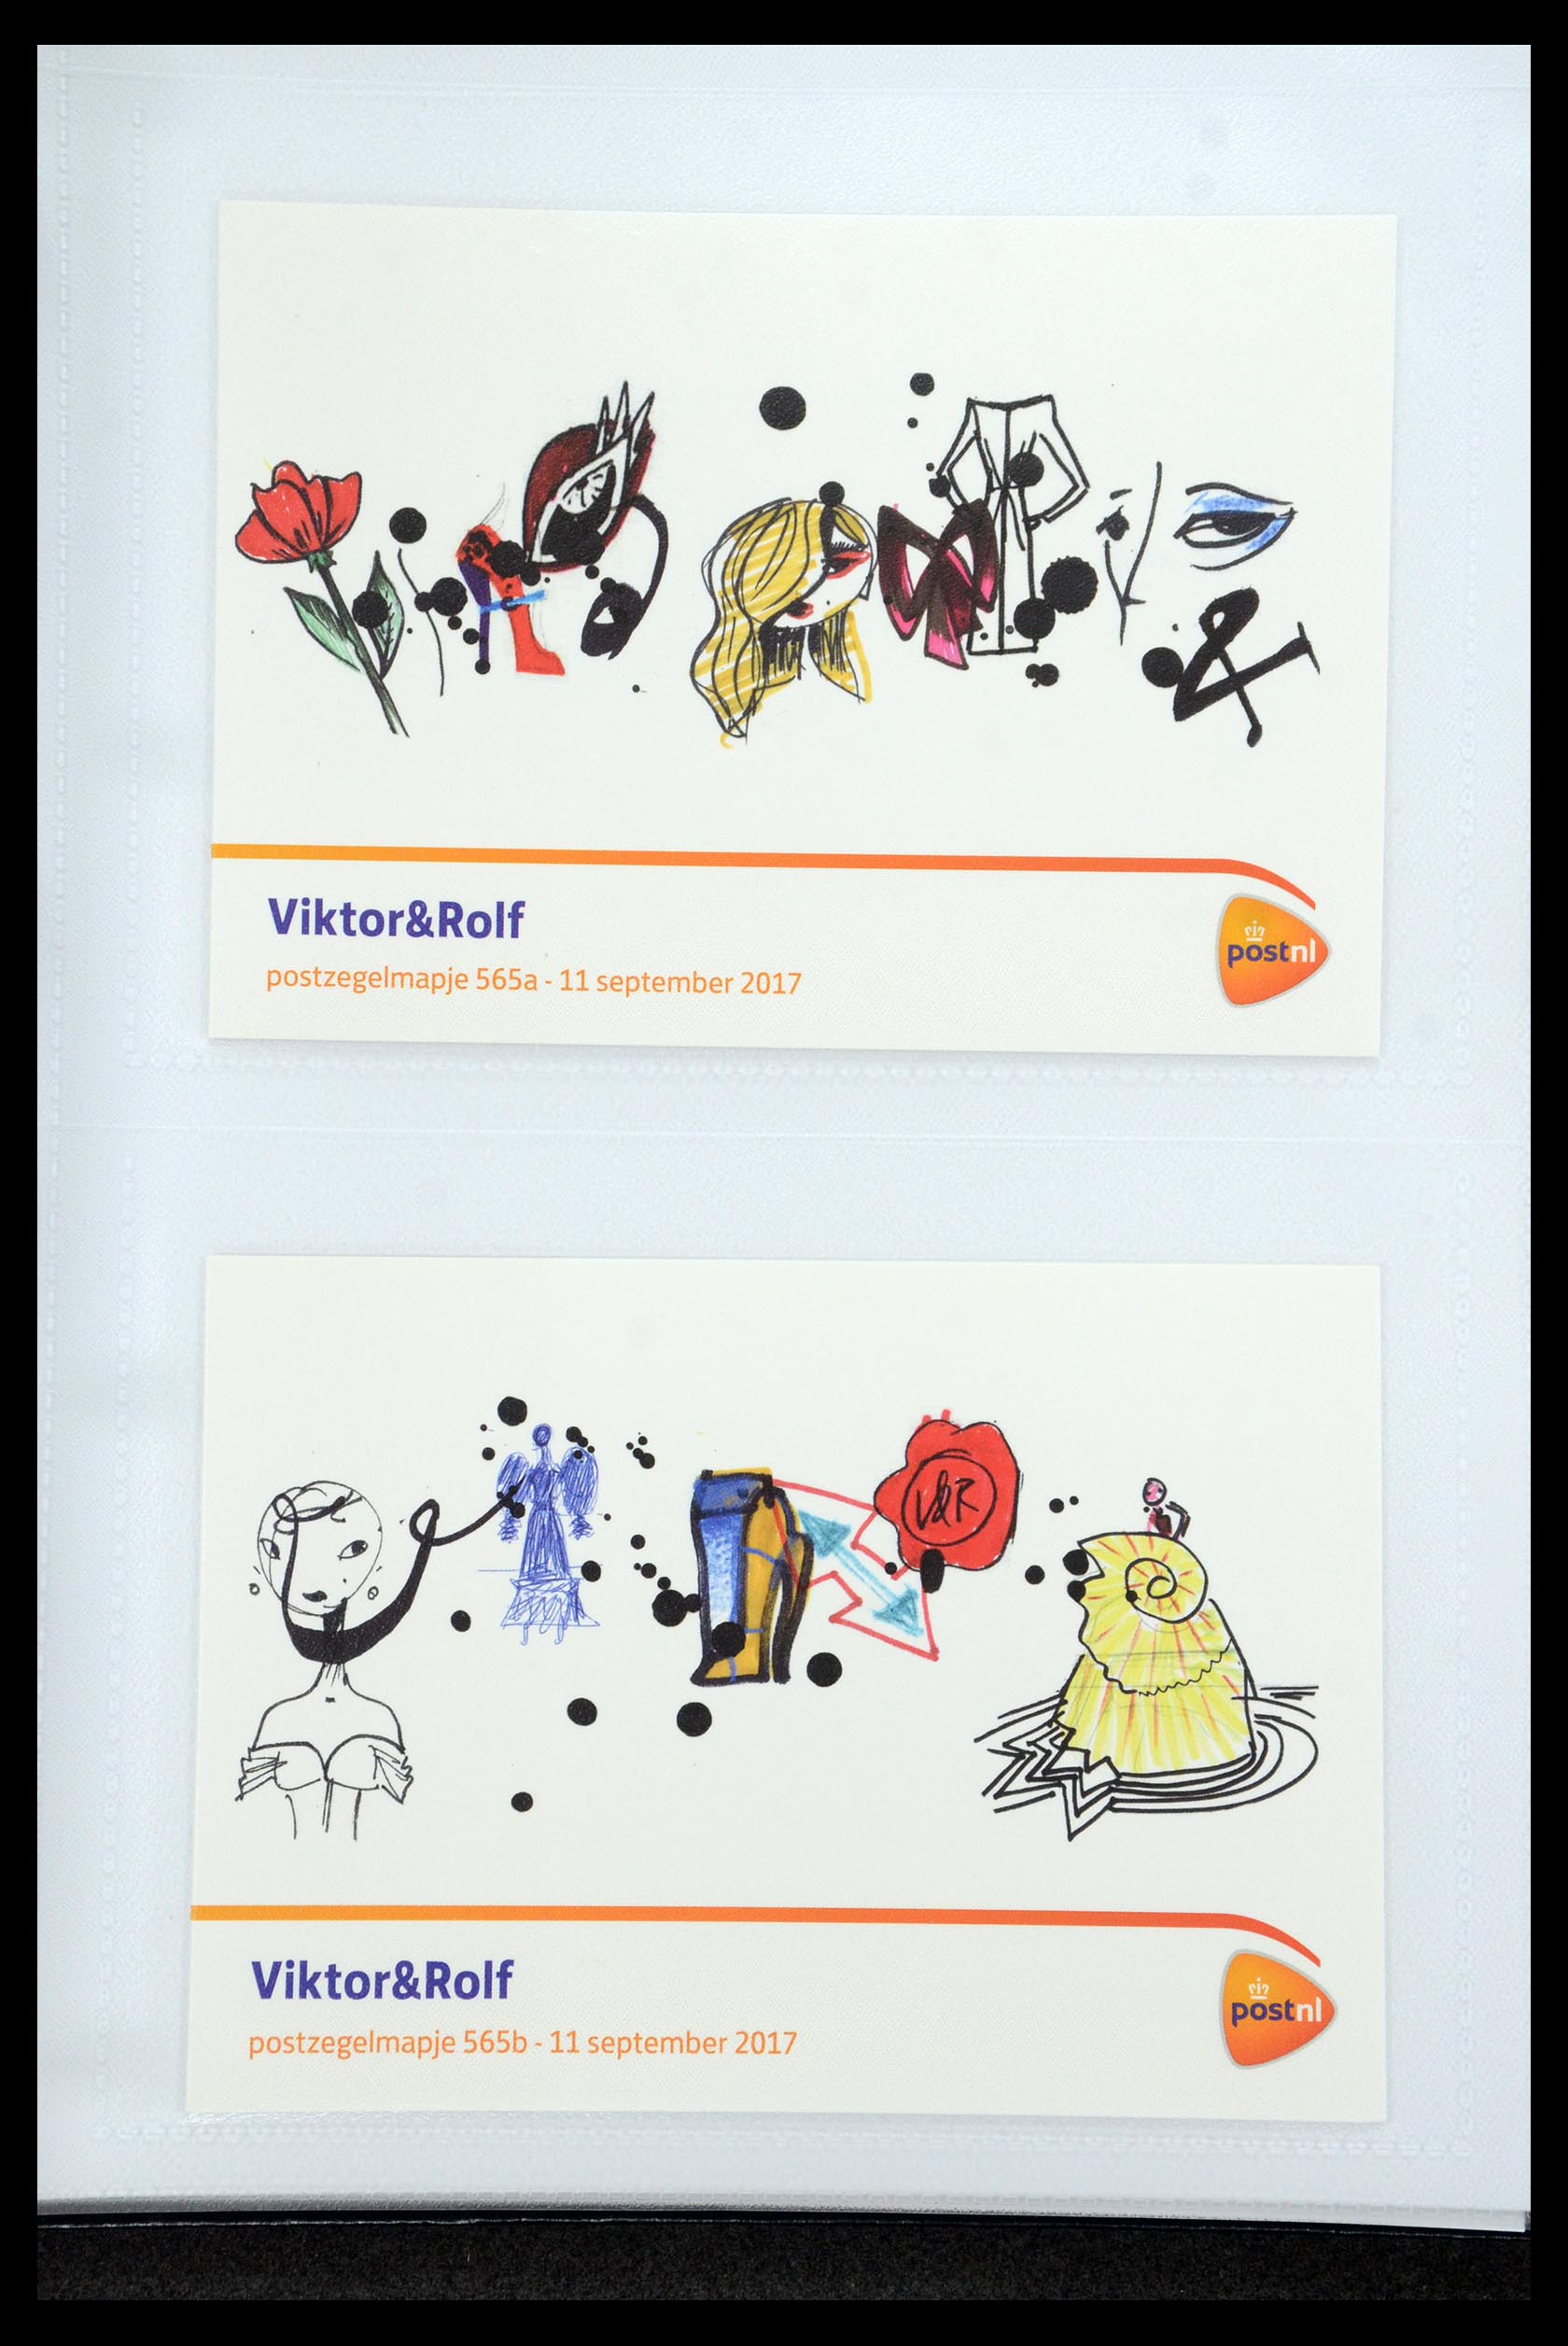 35947 339 - Stamp Collection 35947 Netherlands PTT presentation packs 1982-2019!